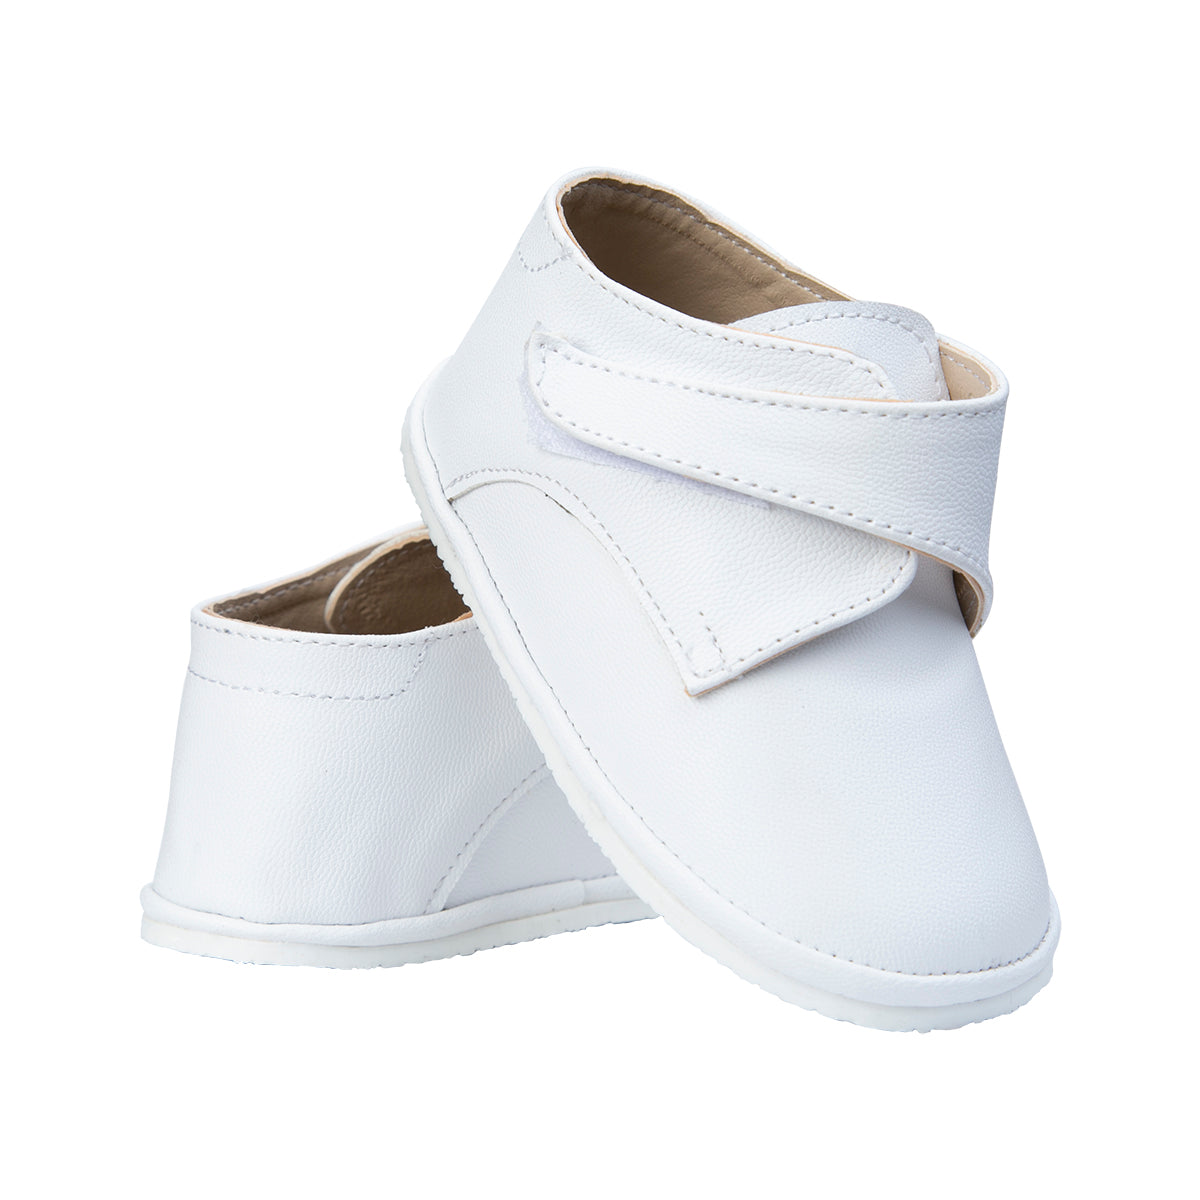 zapato bautizo 0300 blanco 